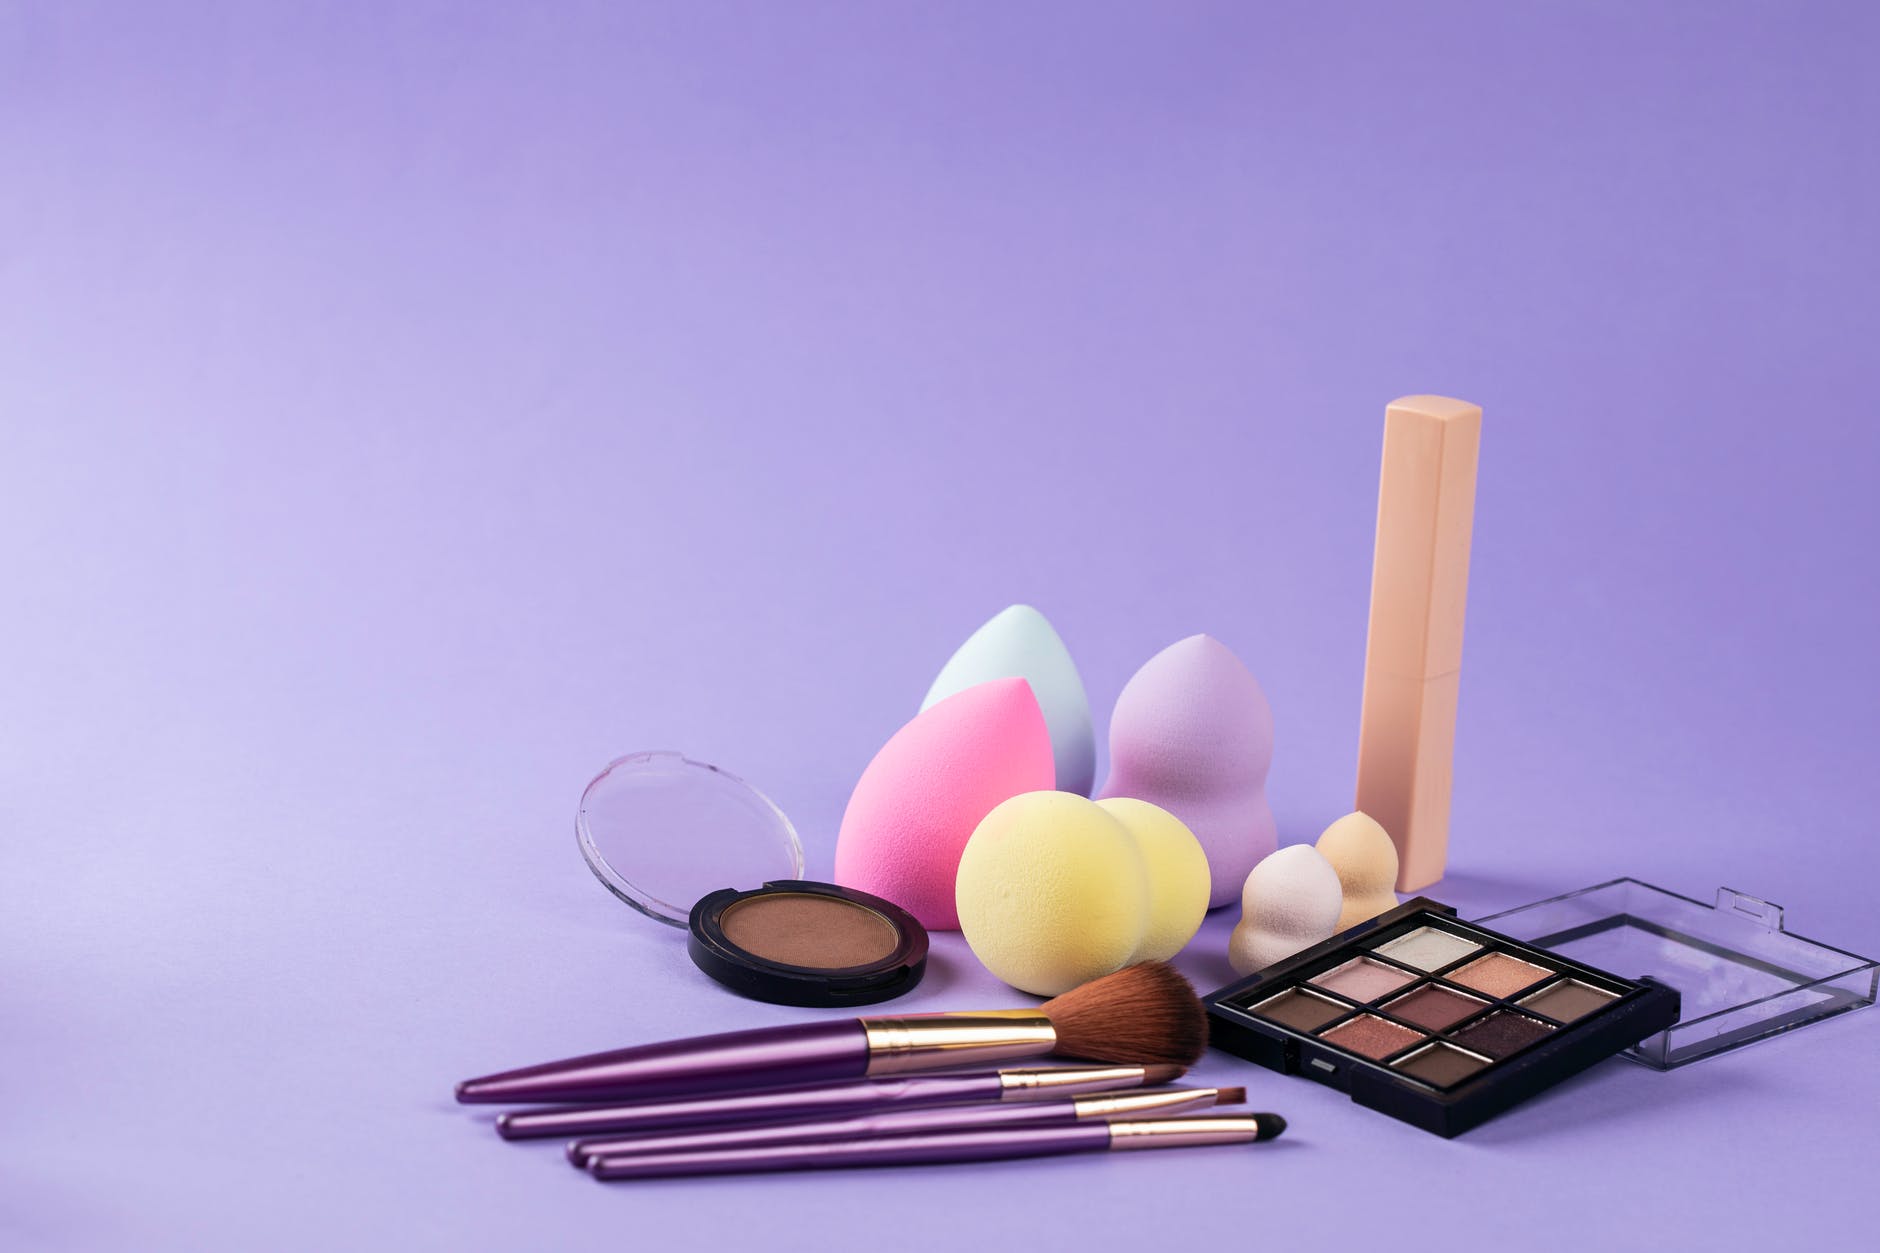 makeup tools on purple surface